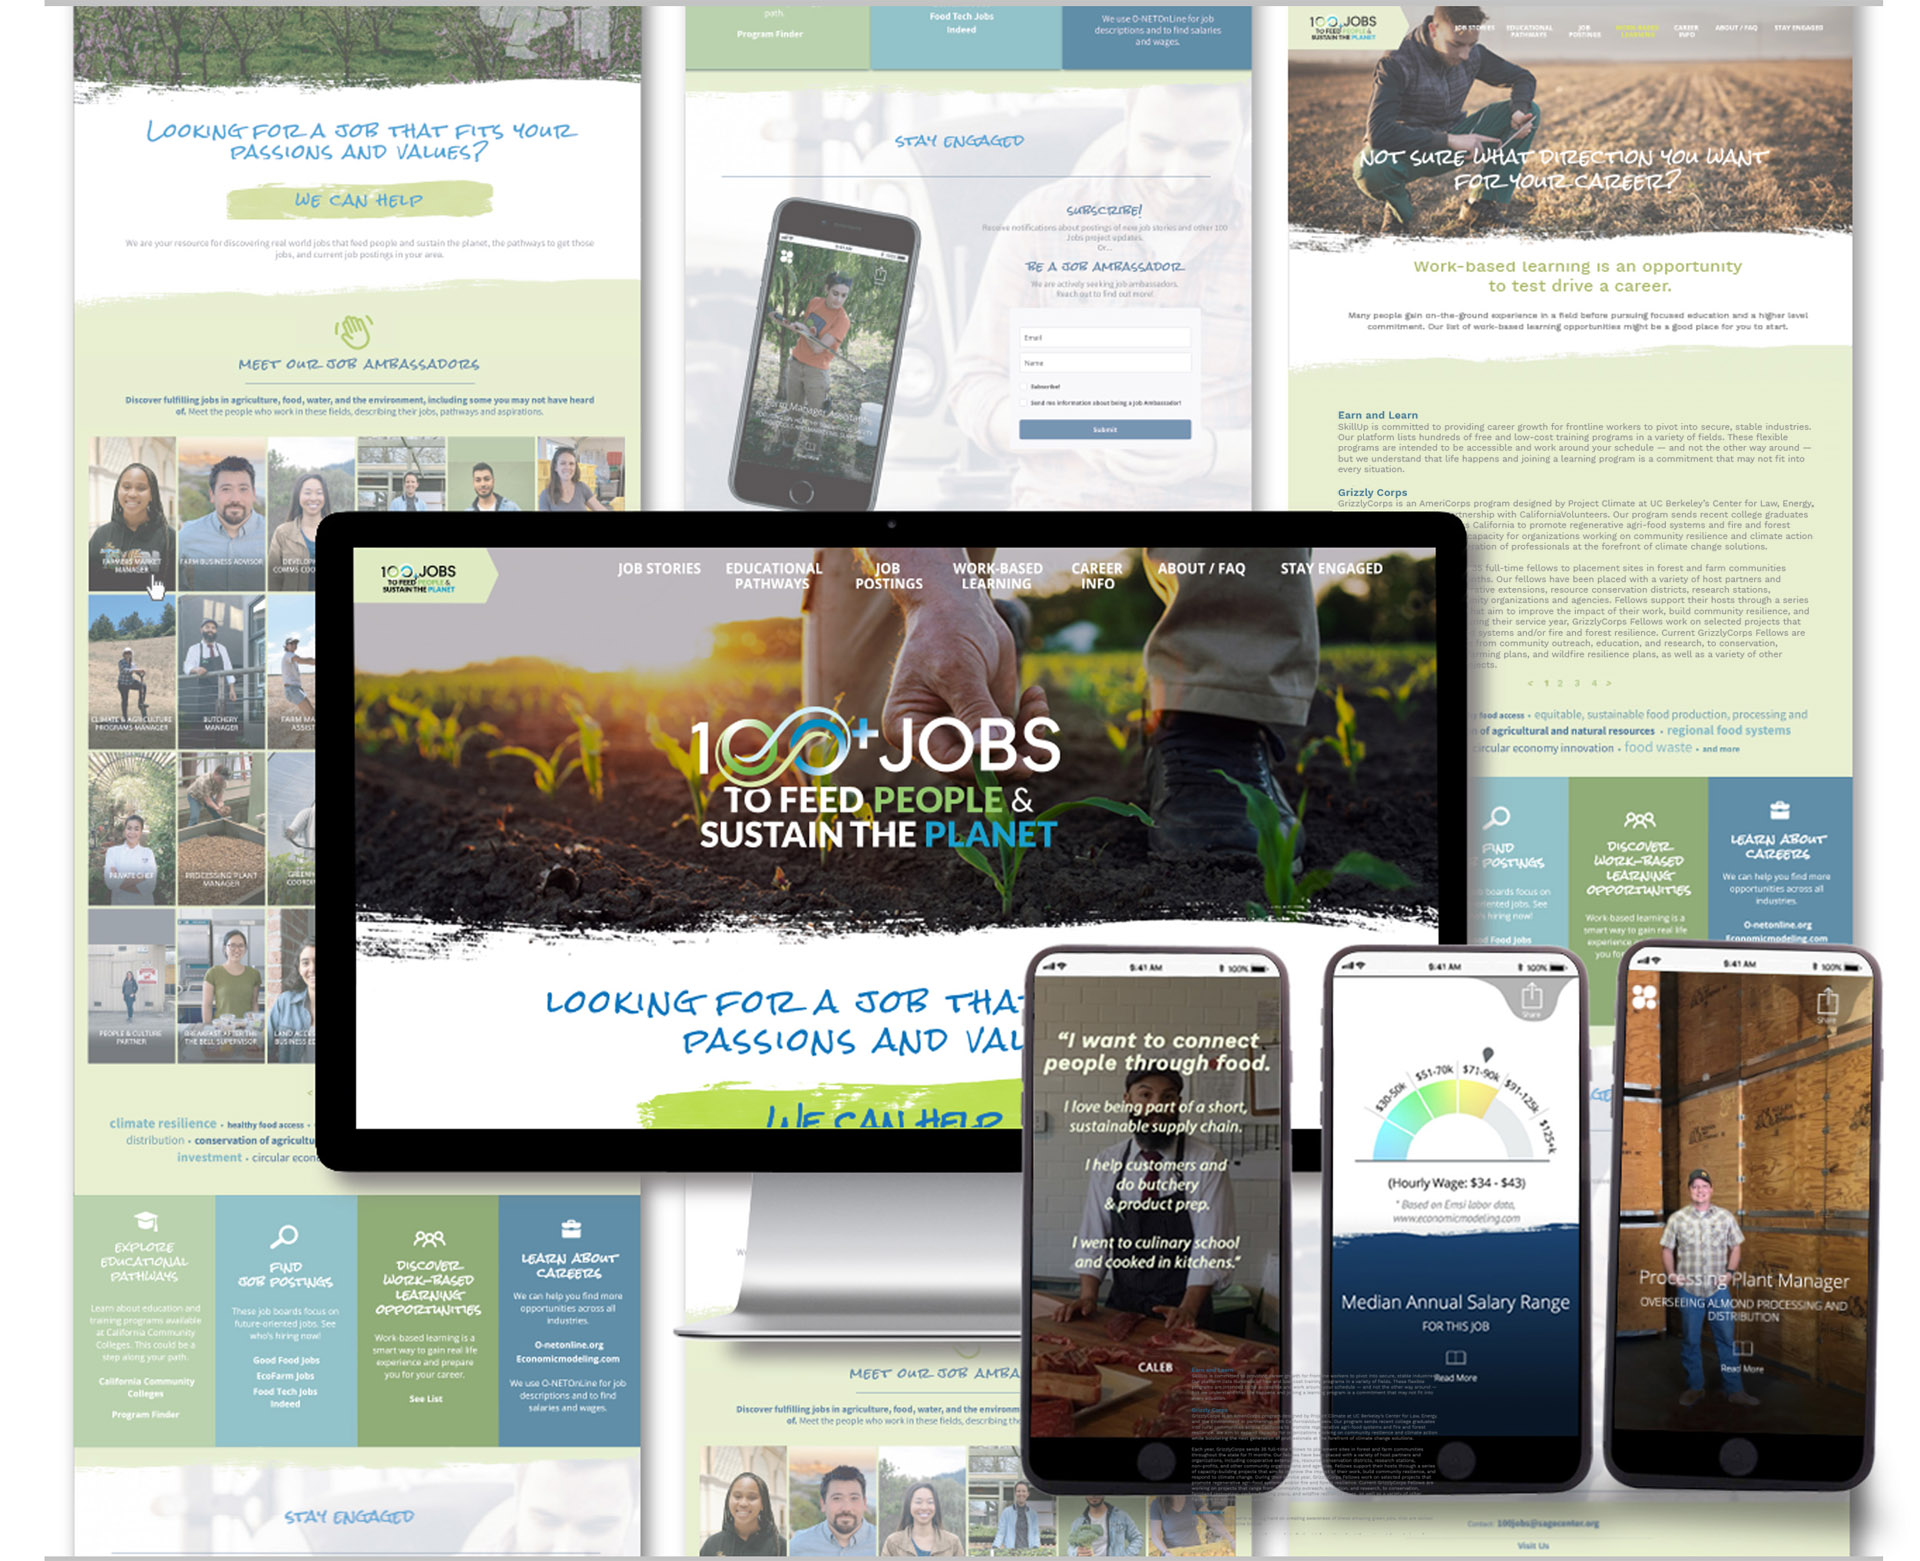 100+ Jobs website design image